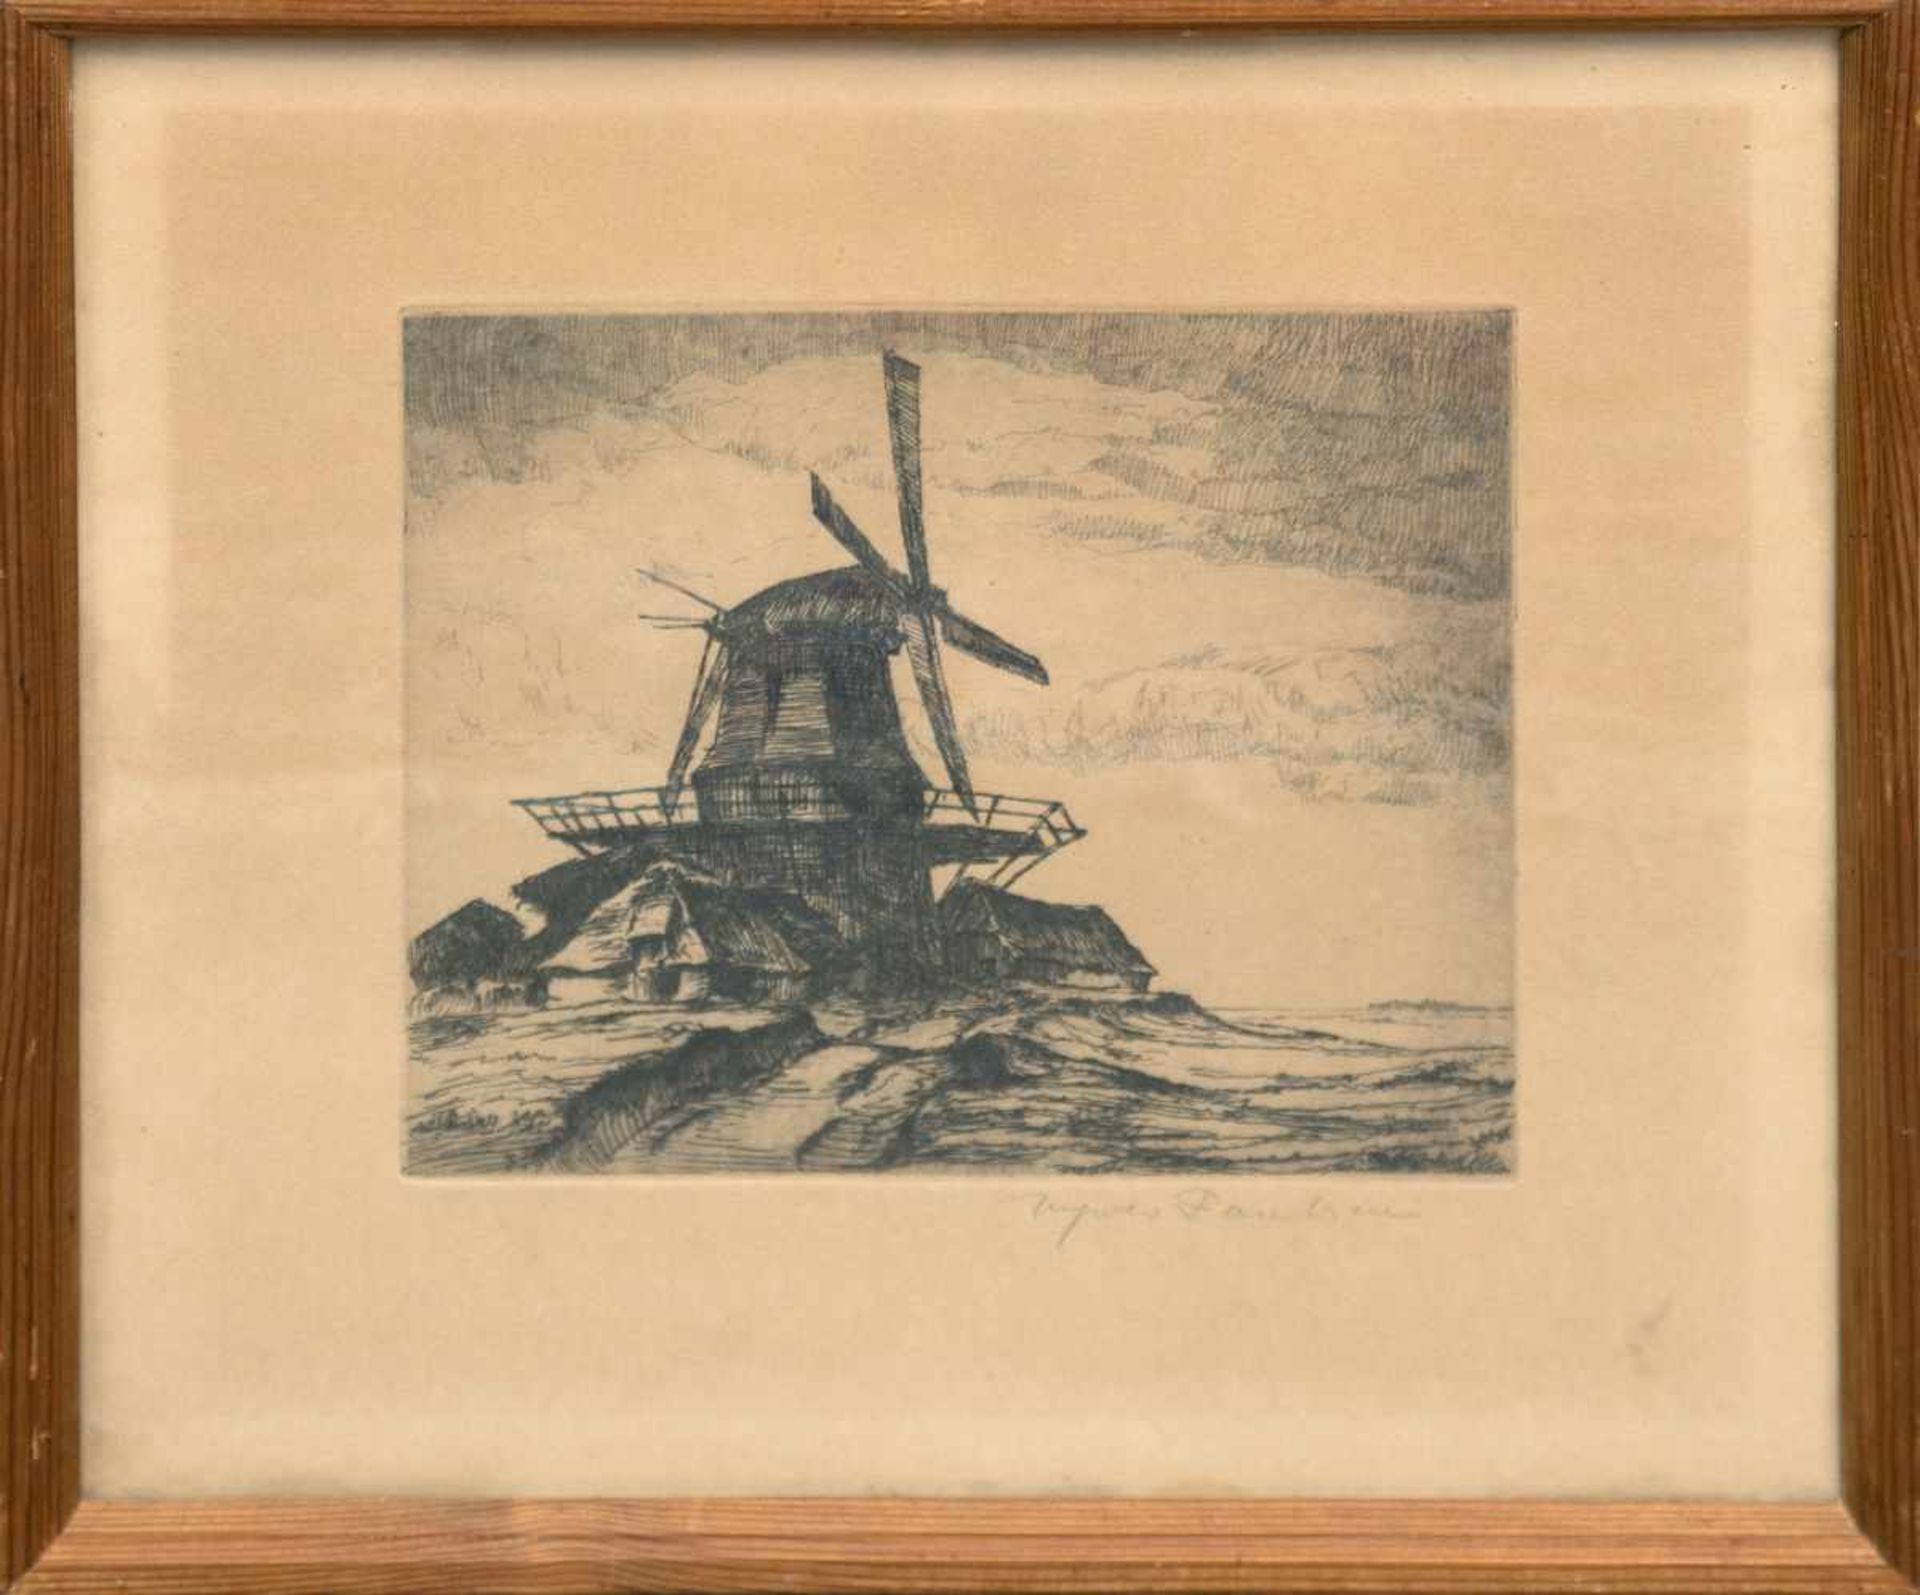 Paulsen, Ingwer (1883 Ellerbeck-1943 Halebüll) "Windmühle", Radierung, handsign. u.r.,19x21 cm,